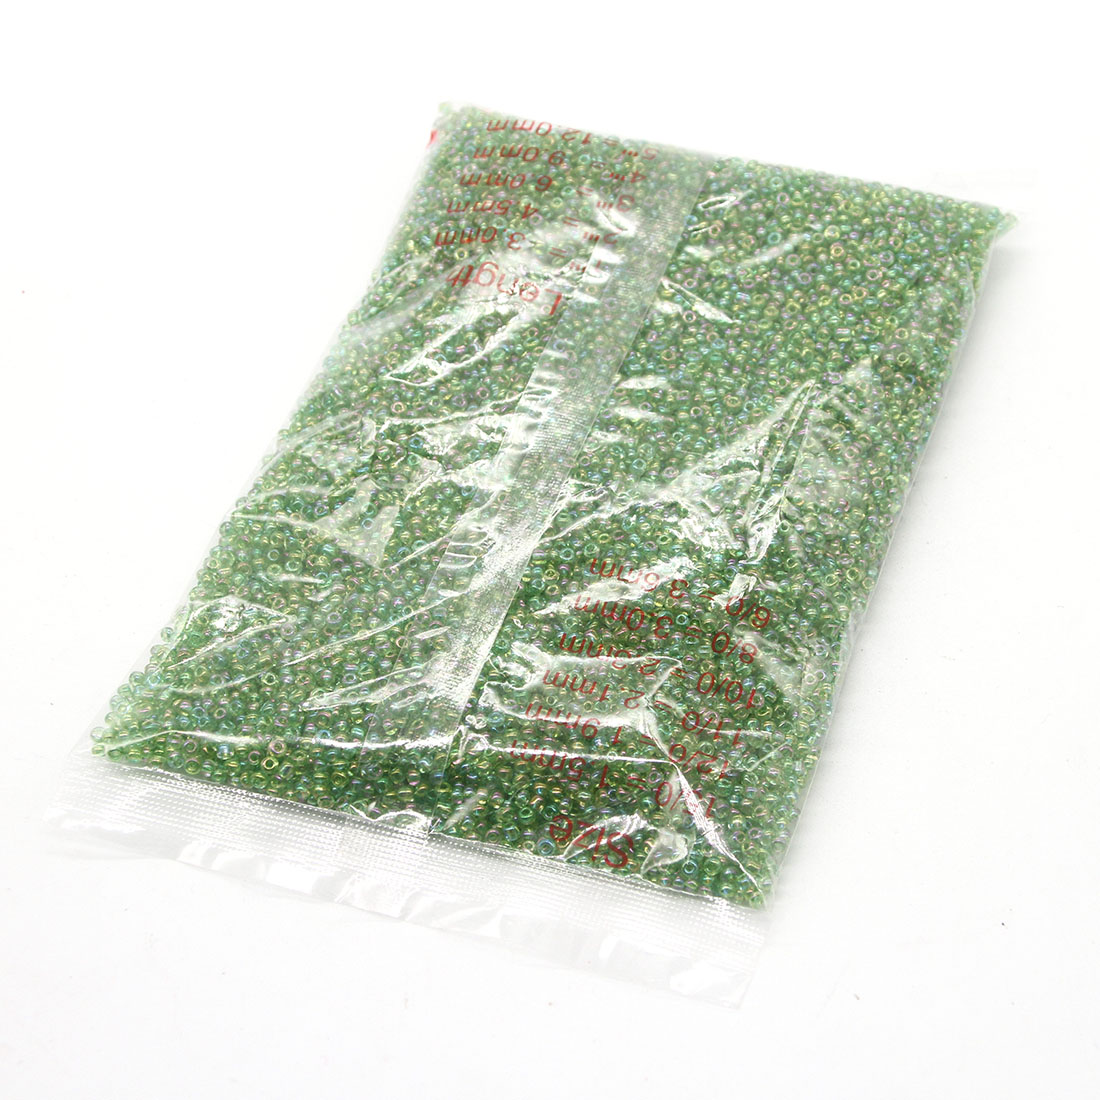 Apple green 3mm 10,000 packs